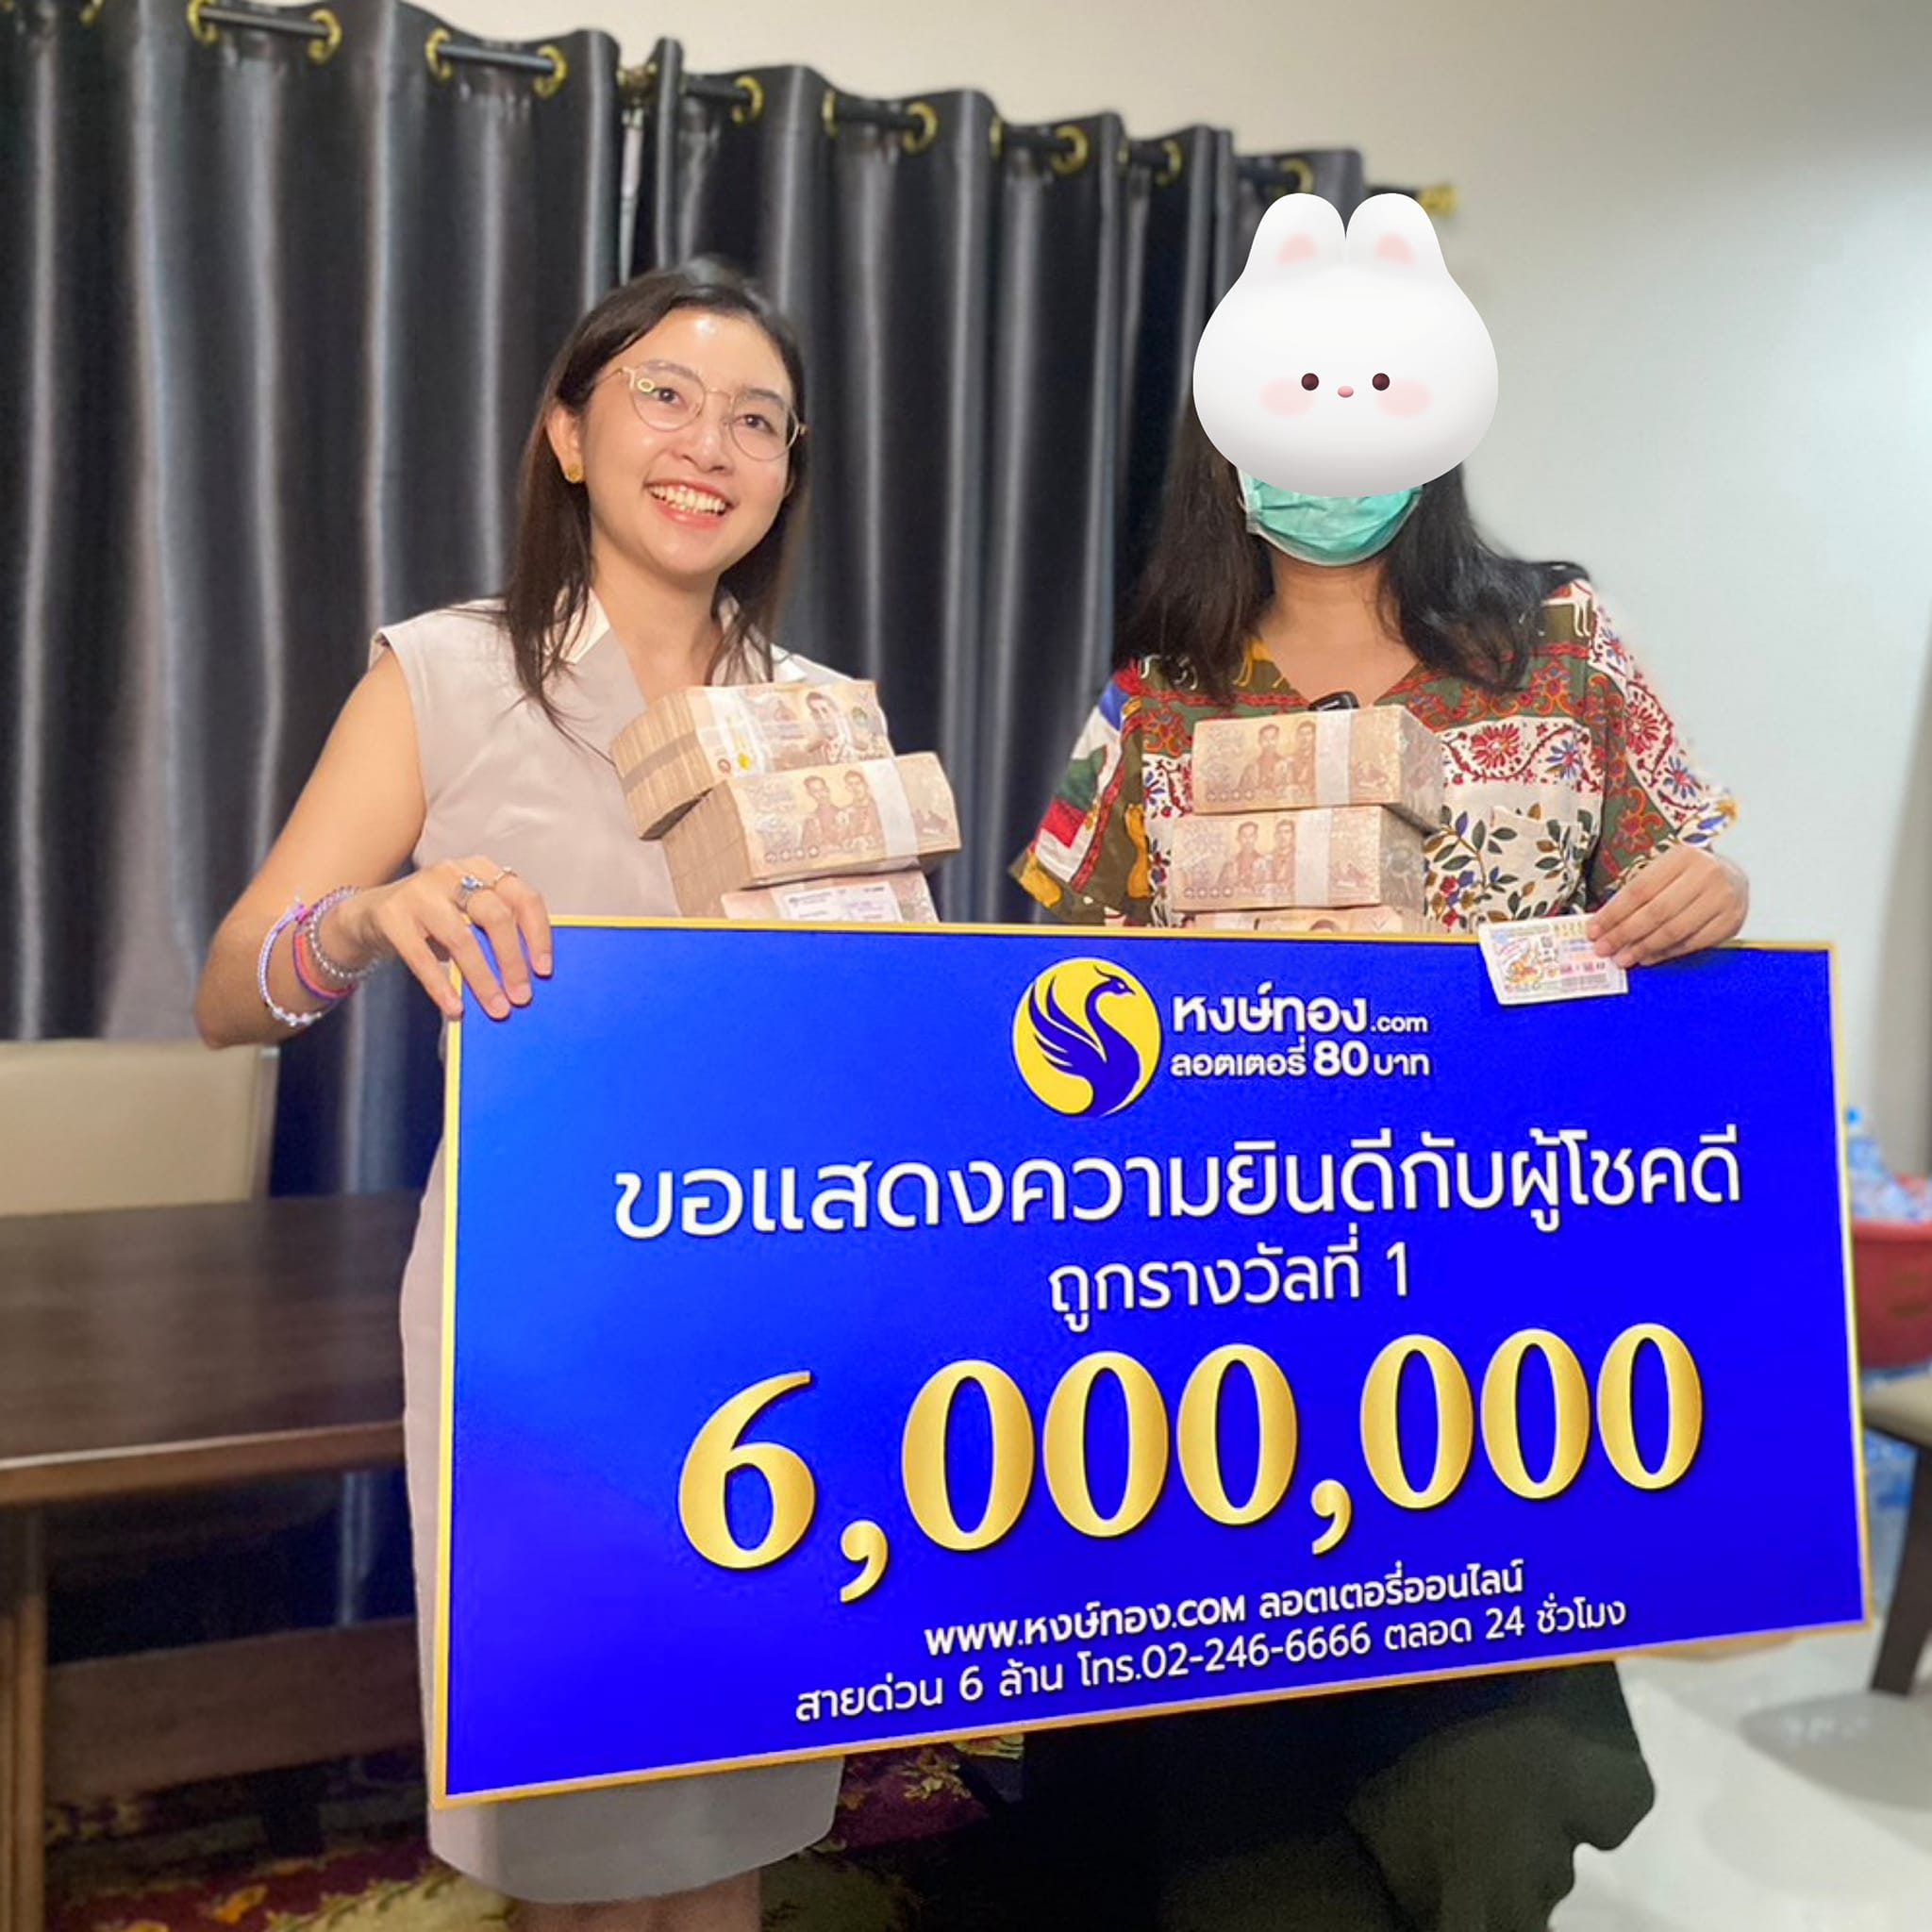 หงษ์ทองแจกรางวัลที่ 1 แบบโปร่งใส ให้โชค 6 ล้าน สาวสมุทรปราการ | Thaiger  ข่าวไทย